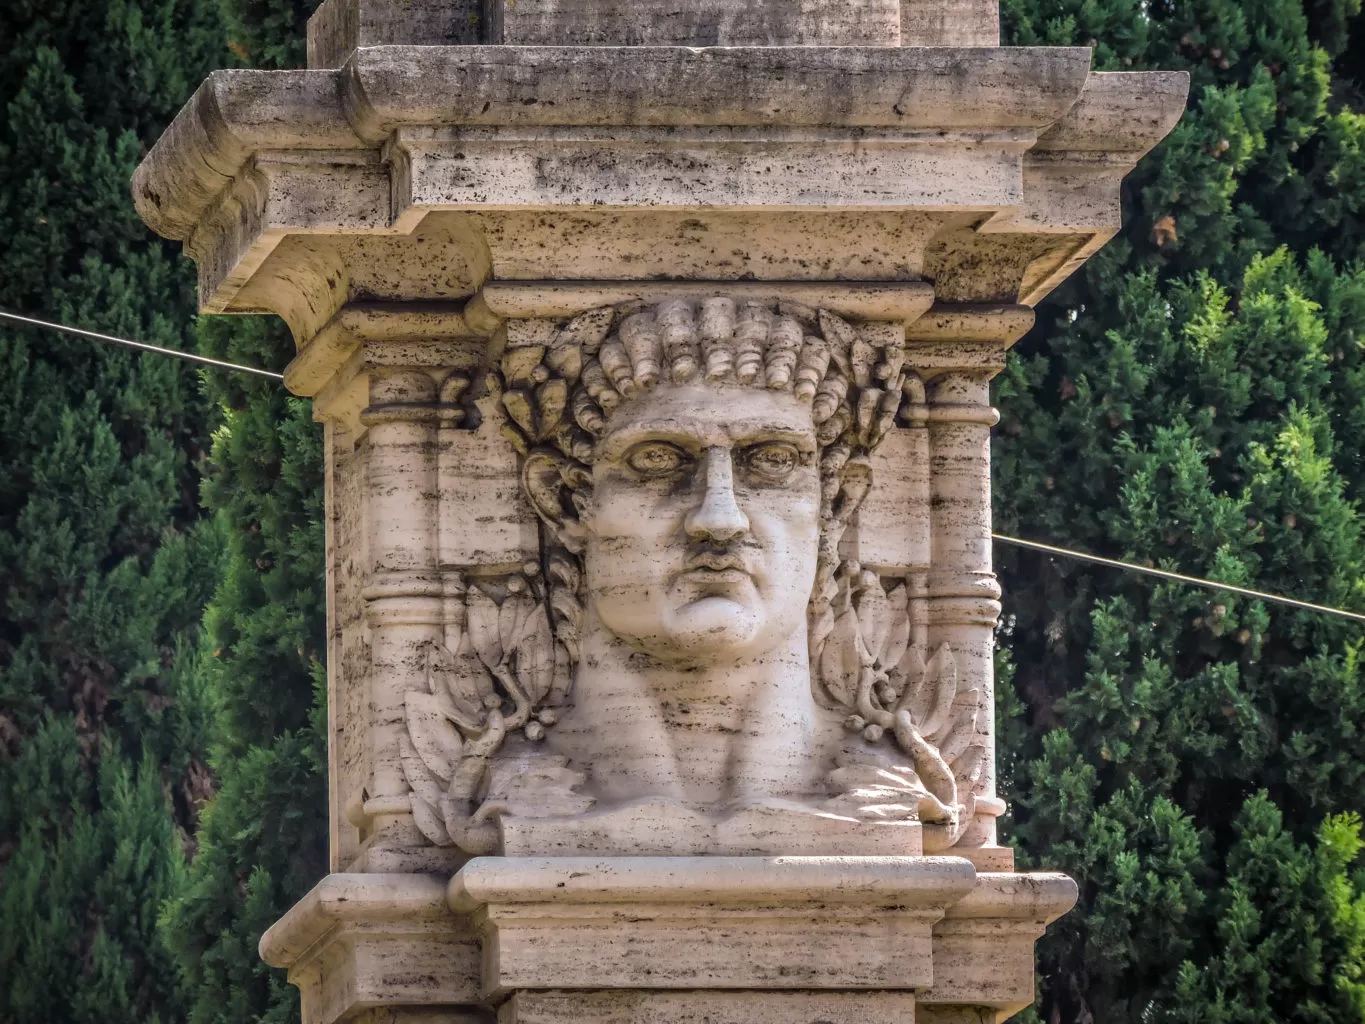 emperor nero bust at entrance to domus aurea